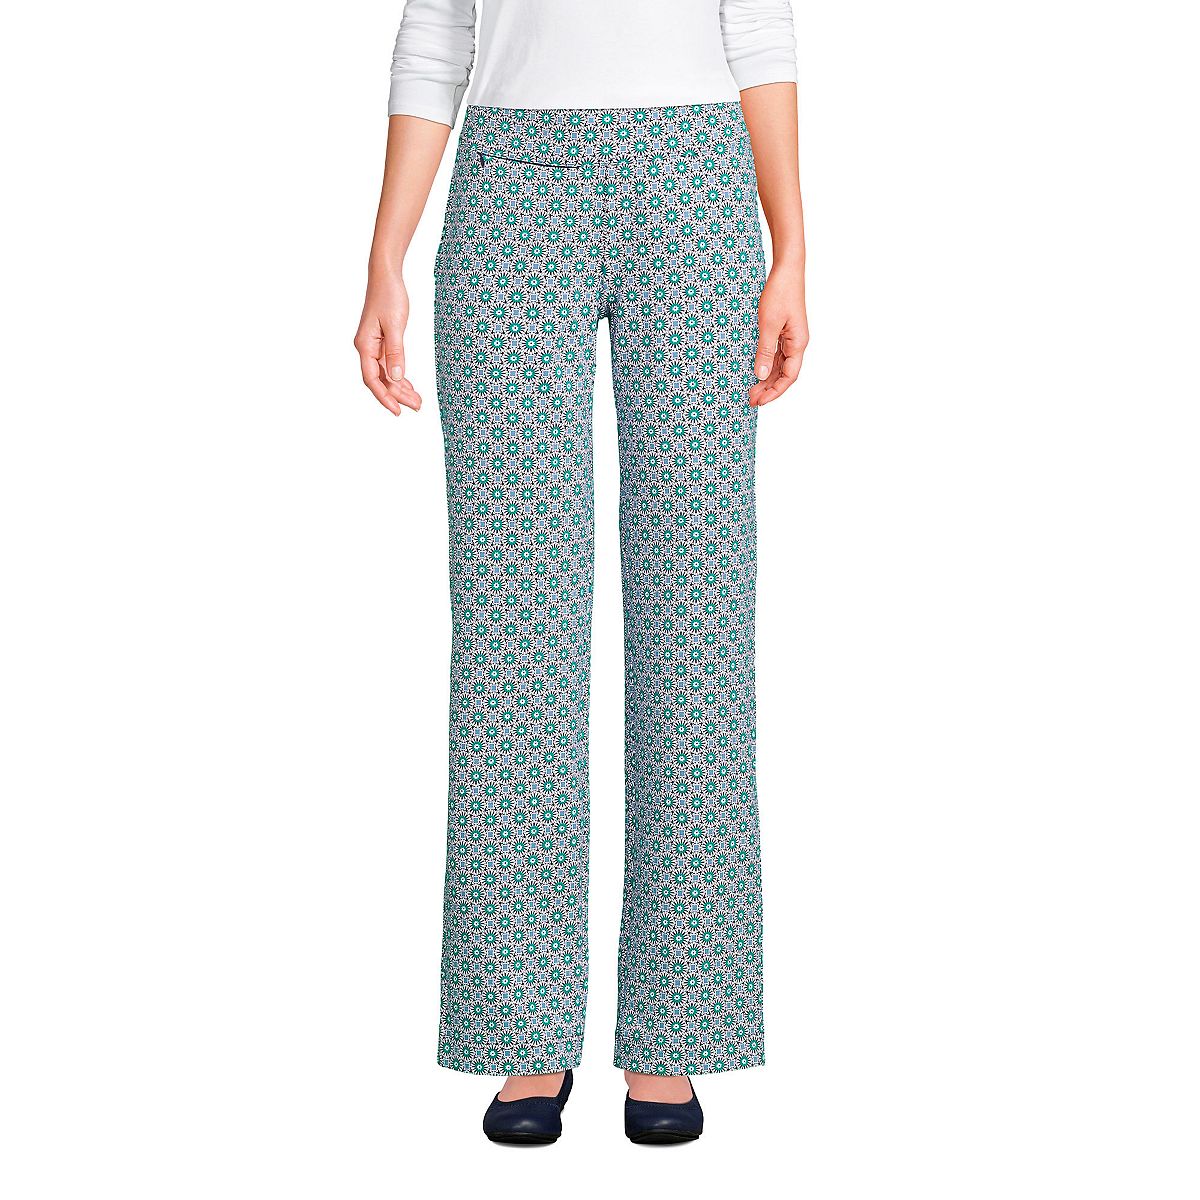 Женские брюки со средней посадкой и эластичной резинкой на талии, прямые брюки с изображением морской звезды Lands' End